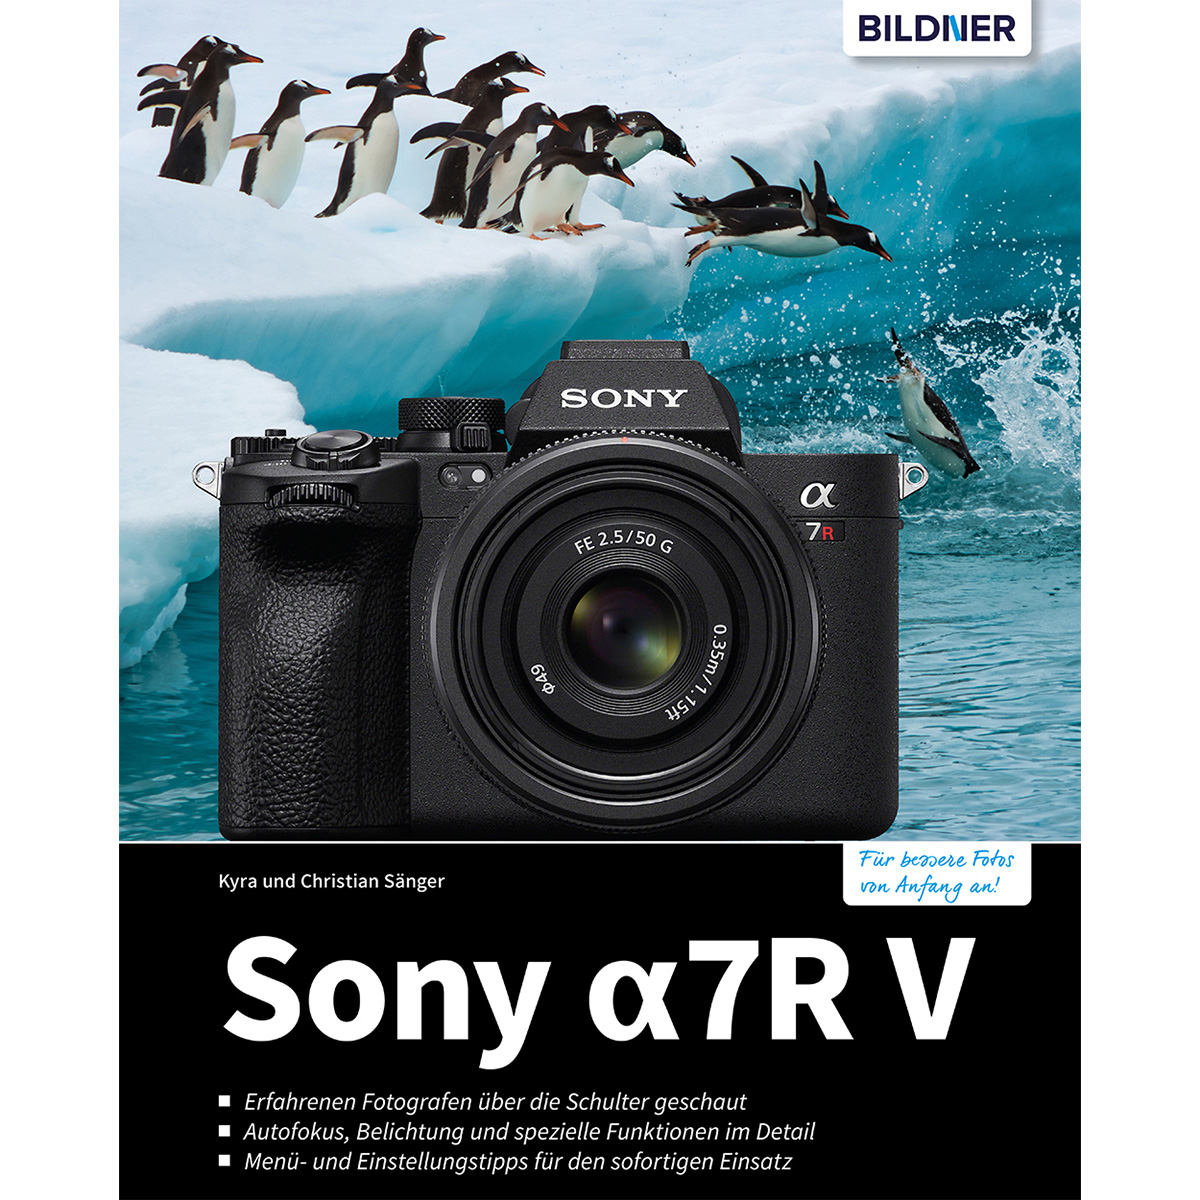 - Praxisbuch zu Ihrer umfangreiche alpha Sony 7R V Kamera Das